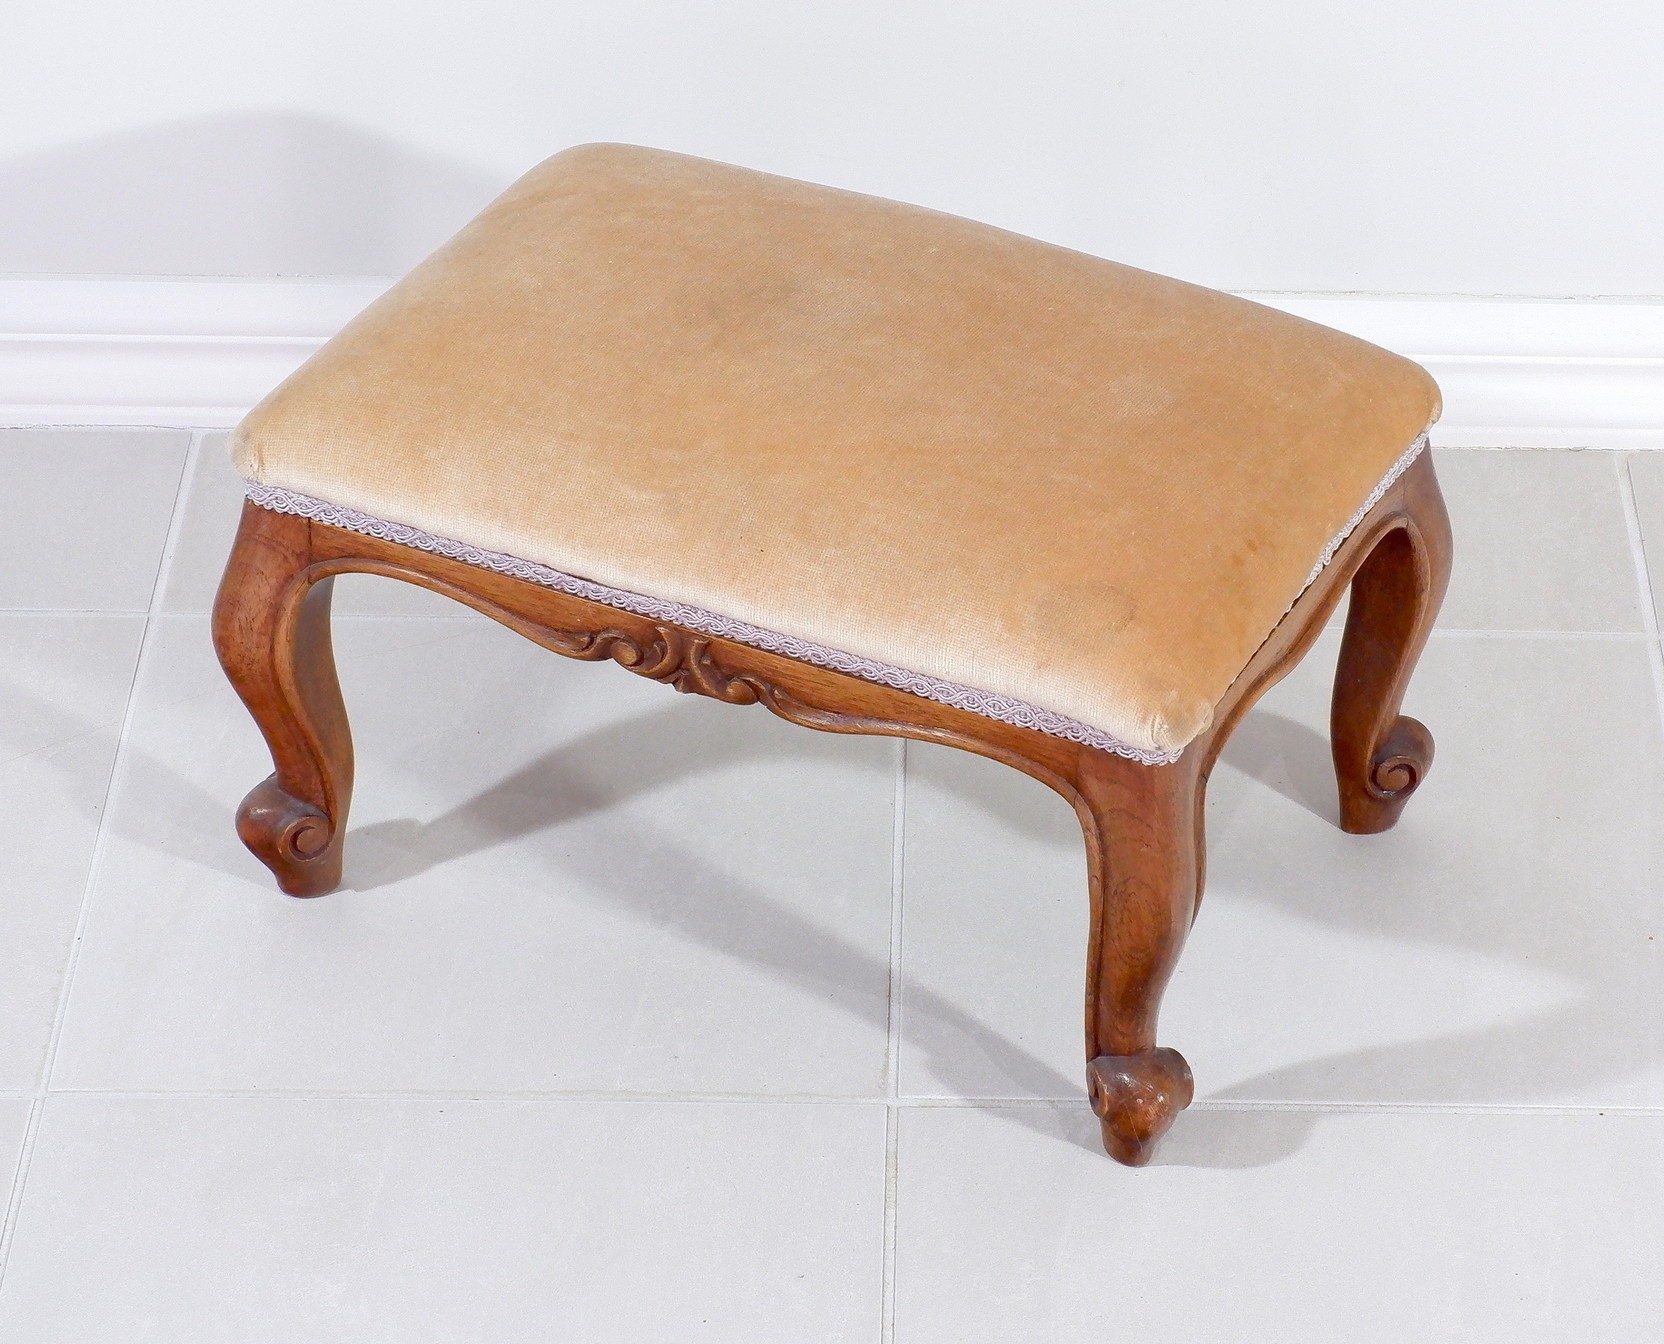 'Vintage Cedar Footstool'